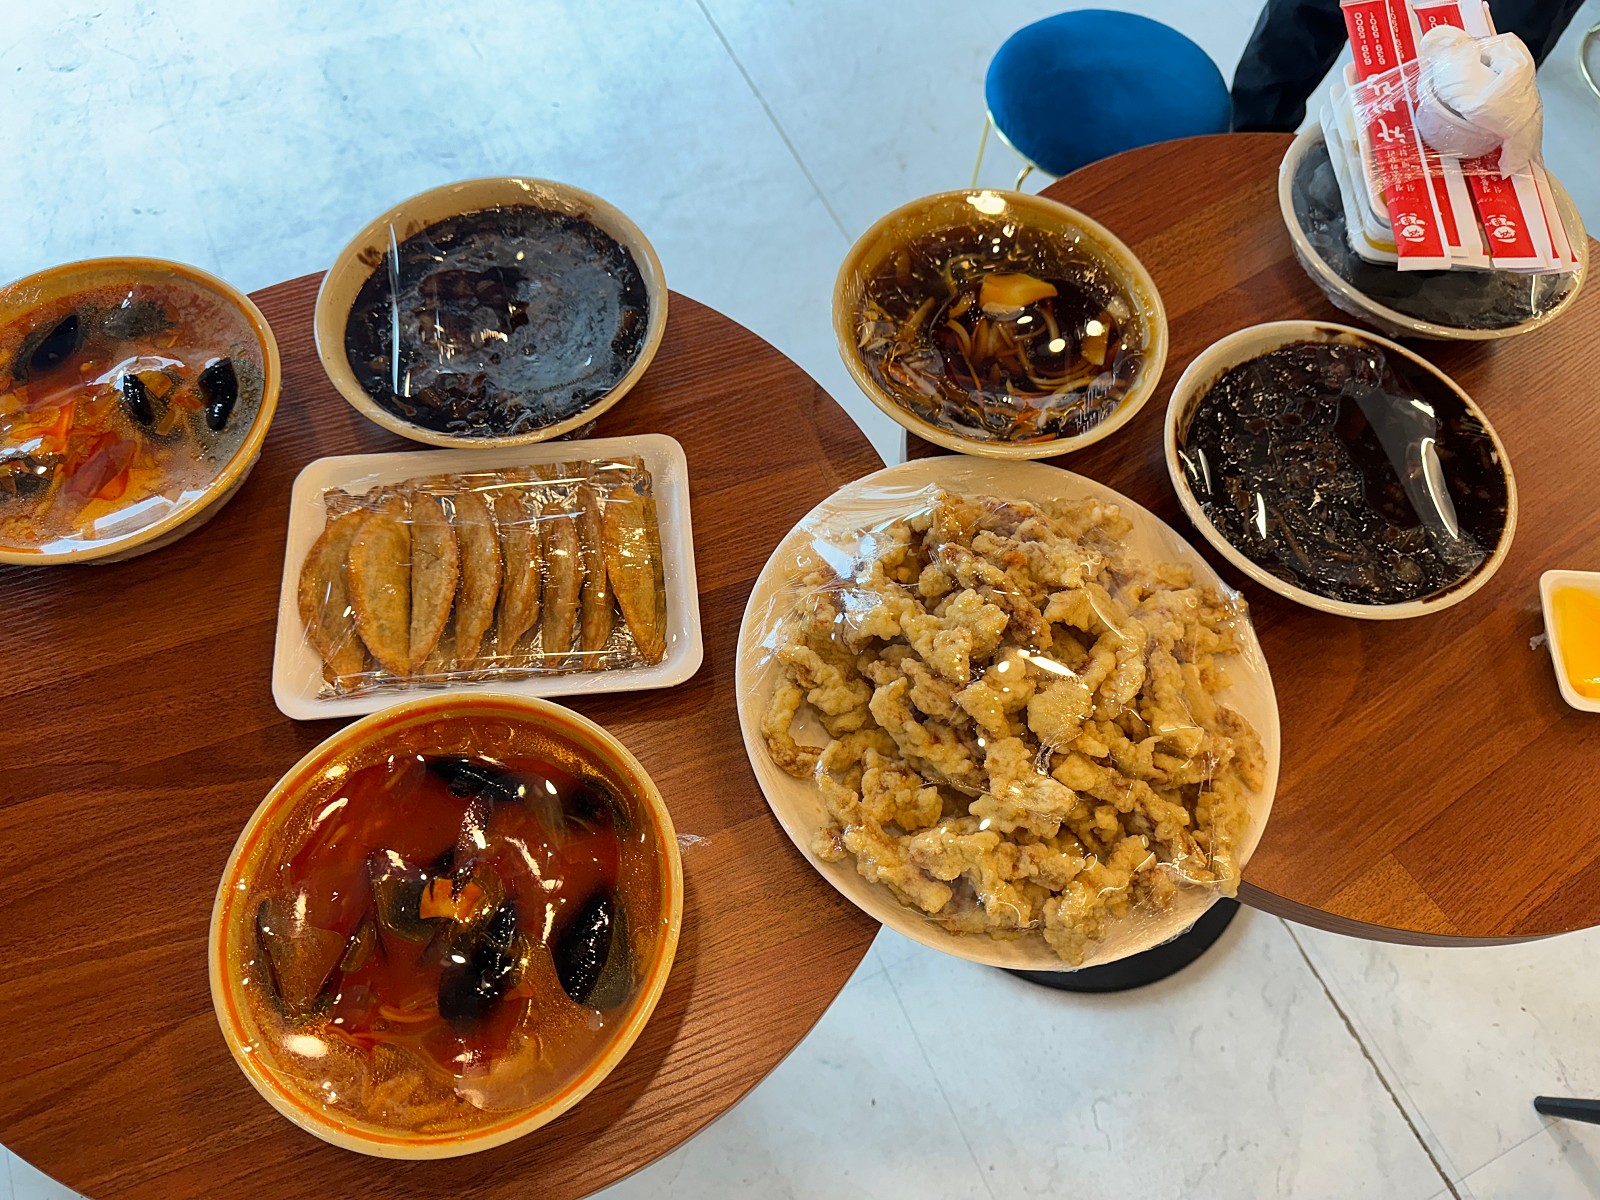 테이블, 식사, 요리, 음식이(가) 표시된 사진

자동 생성된 설명